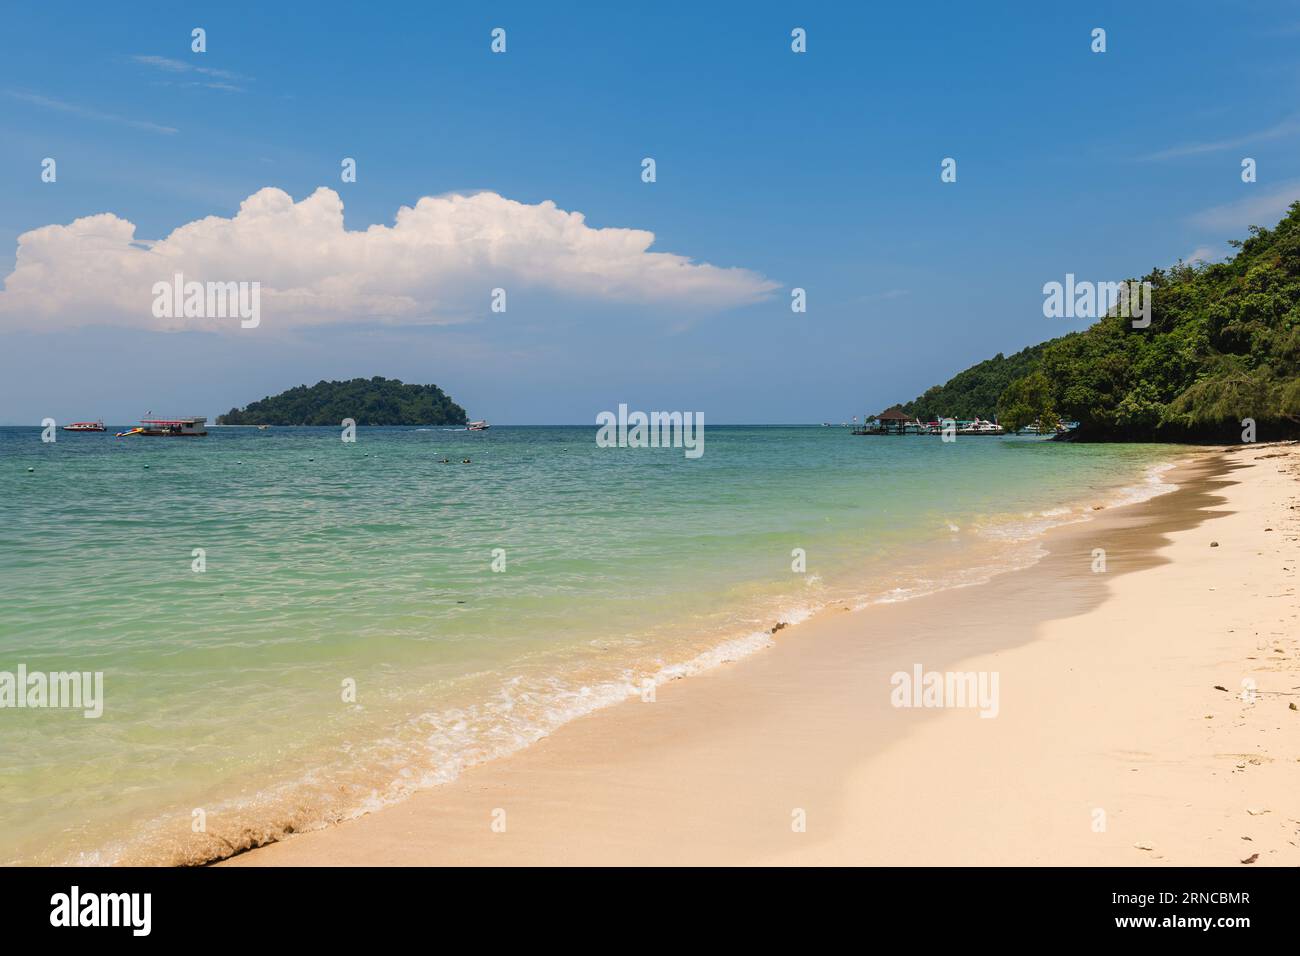 Paysage de l'île de Manukan, une île du parc national de Tunku Abdul Rahman à Sabah, Malaisie Banque D'Images